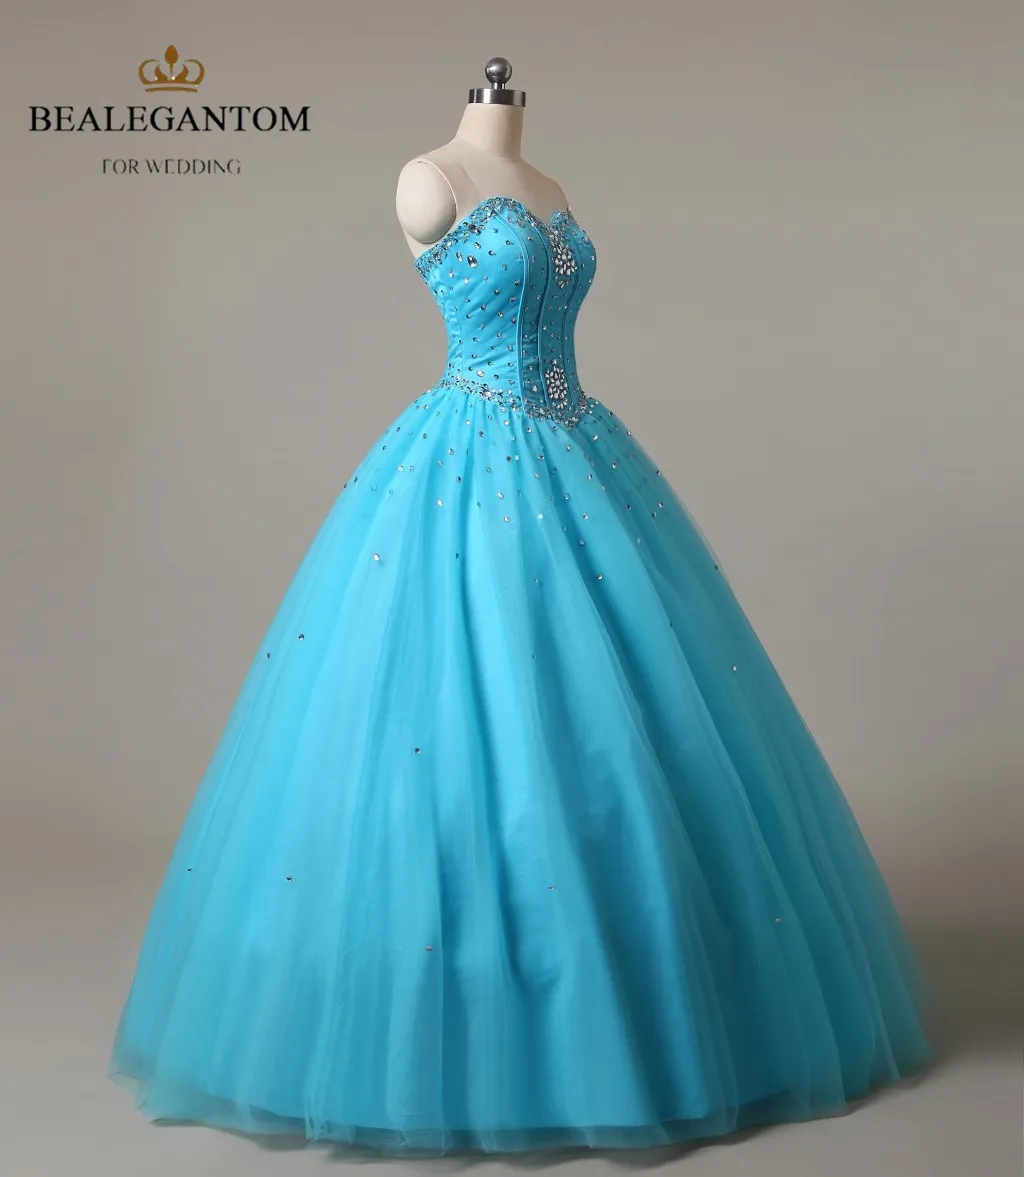 Bealegantom Modne Tanie Suknie Quinceanera 2018 Suknia balowa z koralikami Kryształowa koronki w górę słodkie 16 sukienek w magazynie qa522